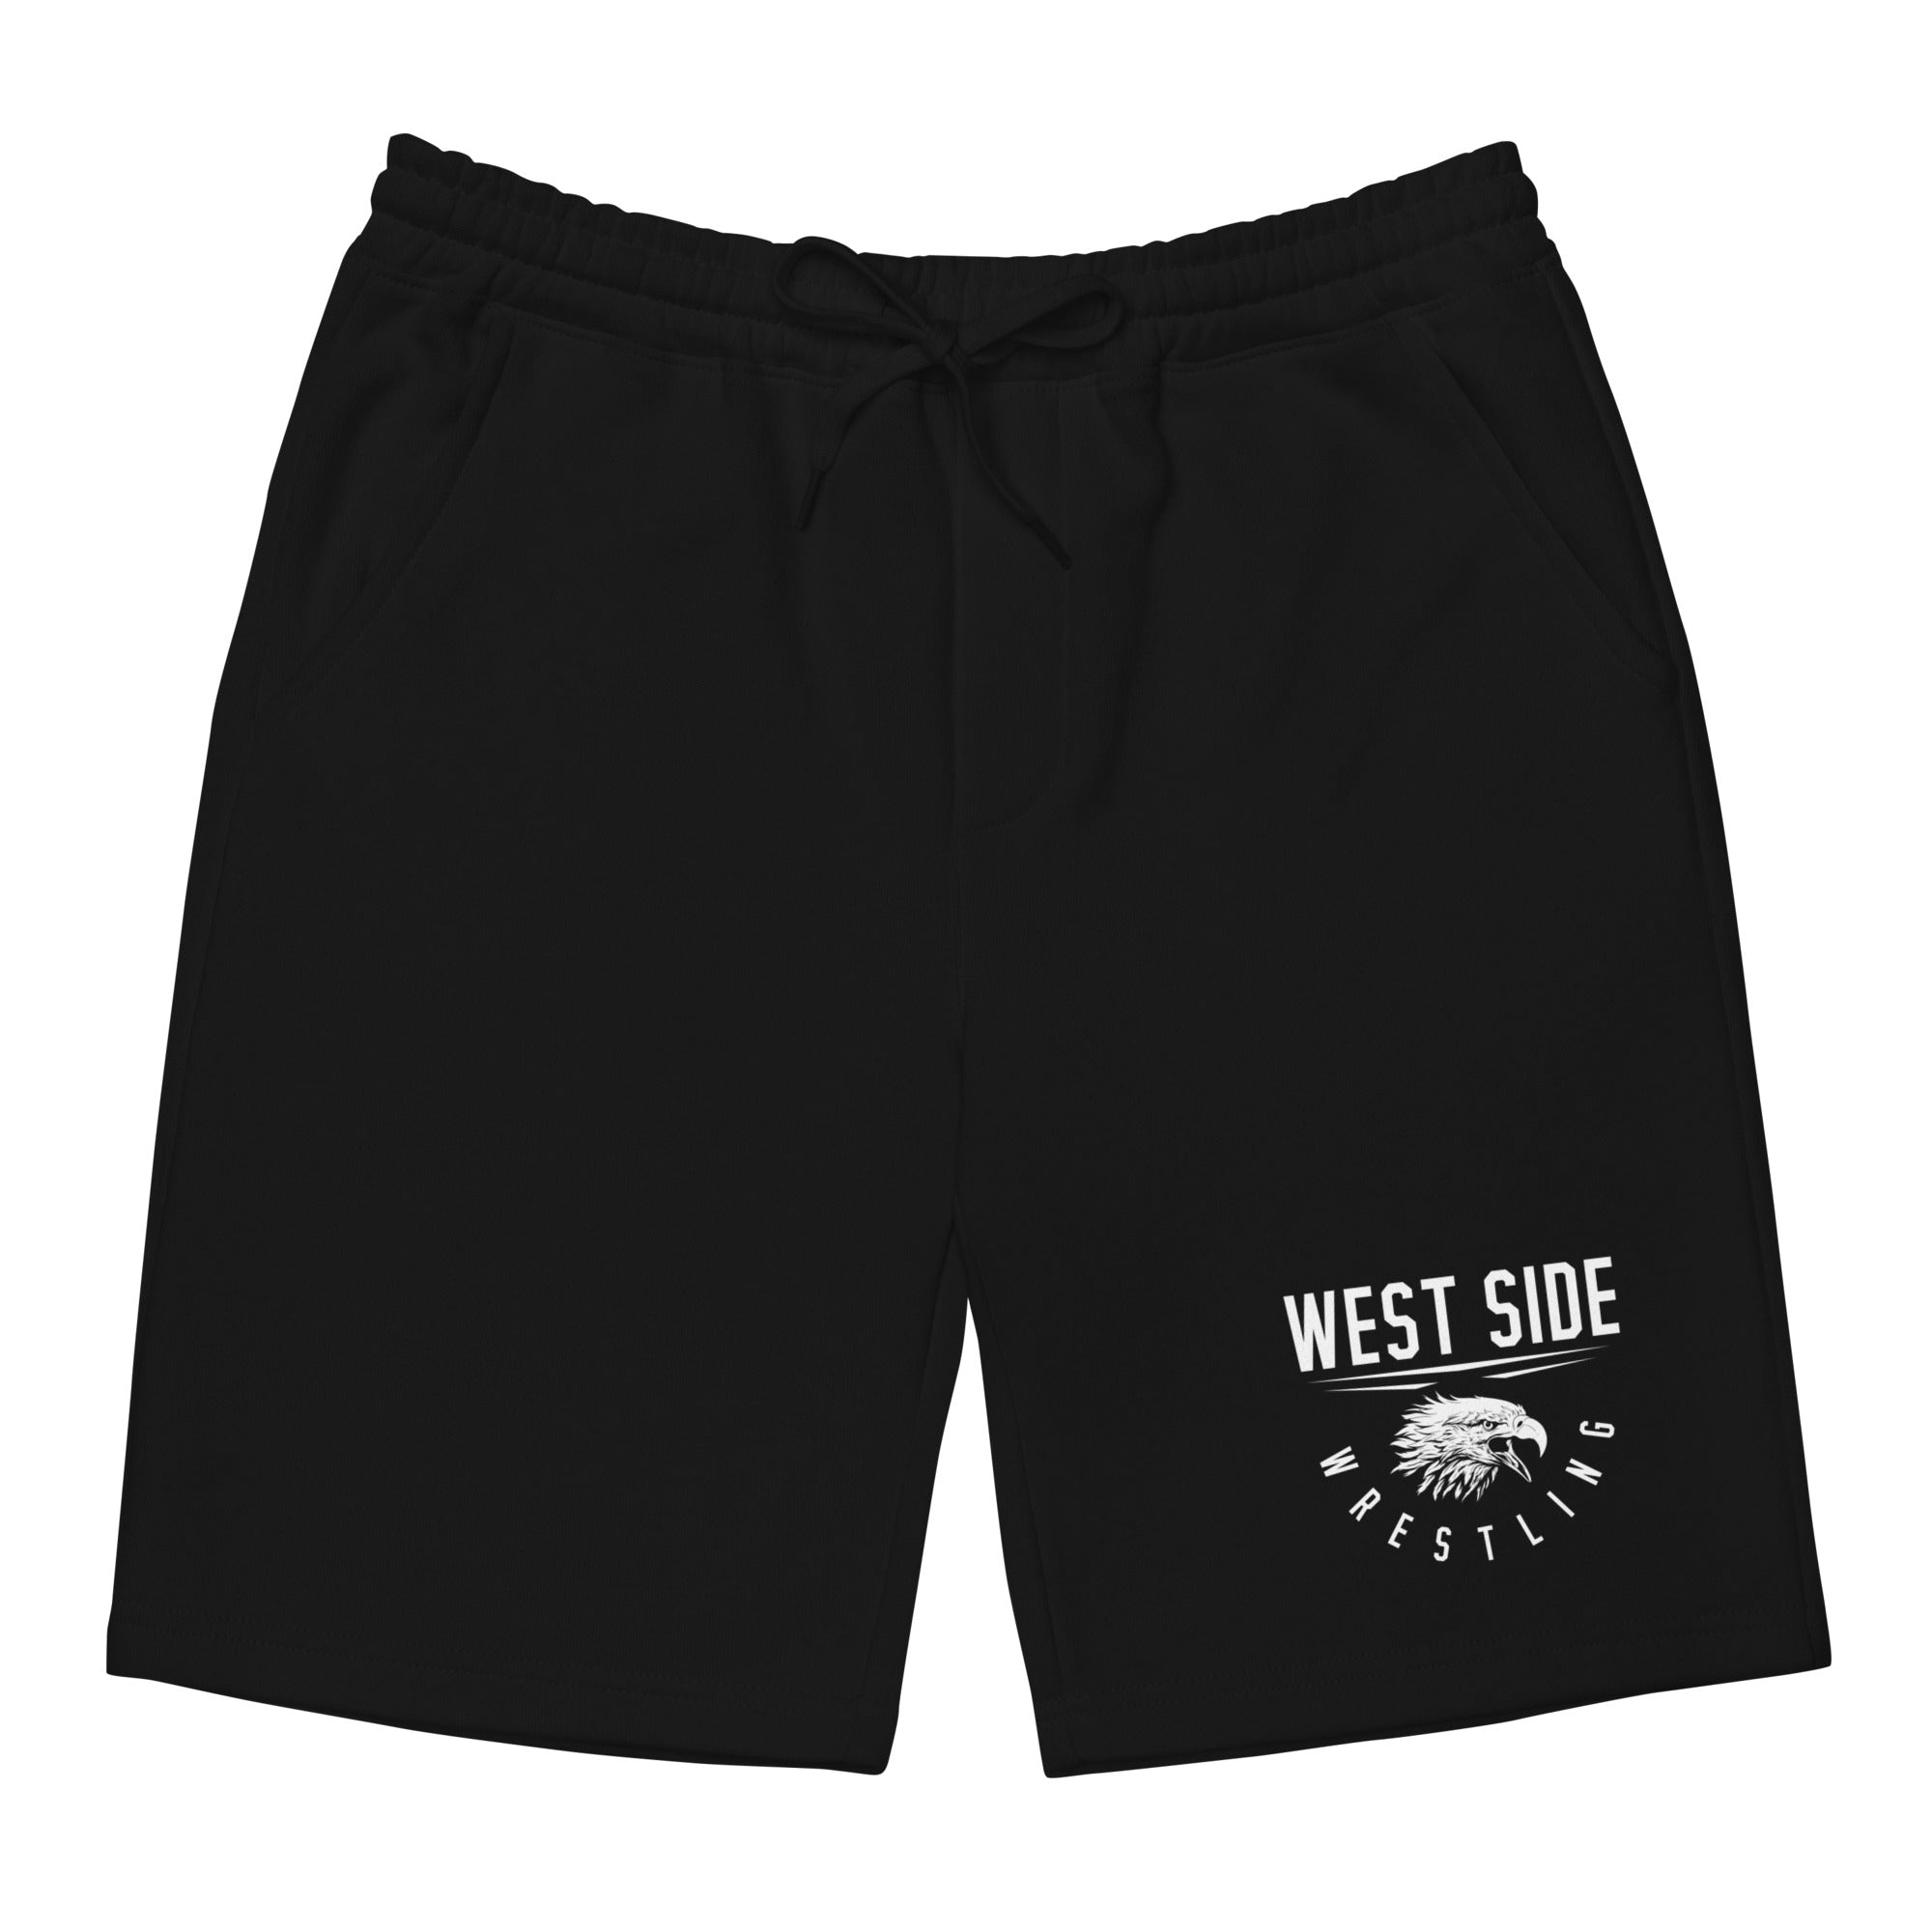 West Side Eagles Wrestling Mens Fleece Shorts